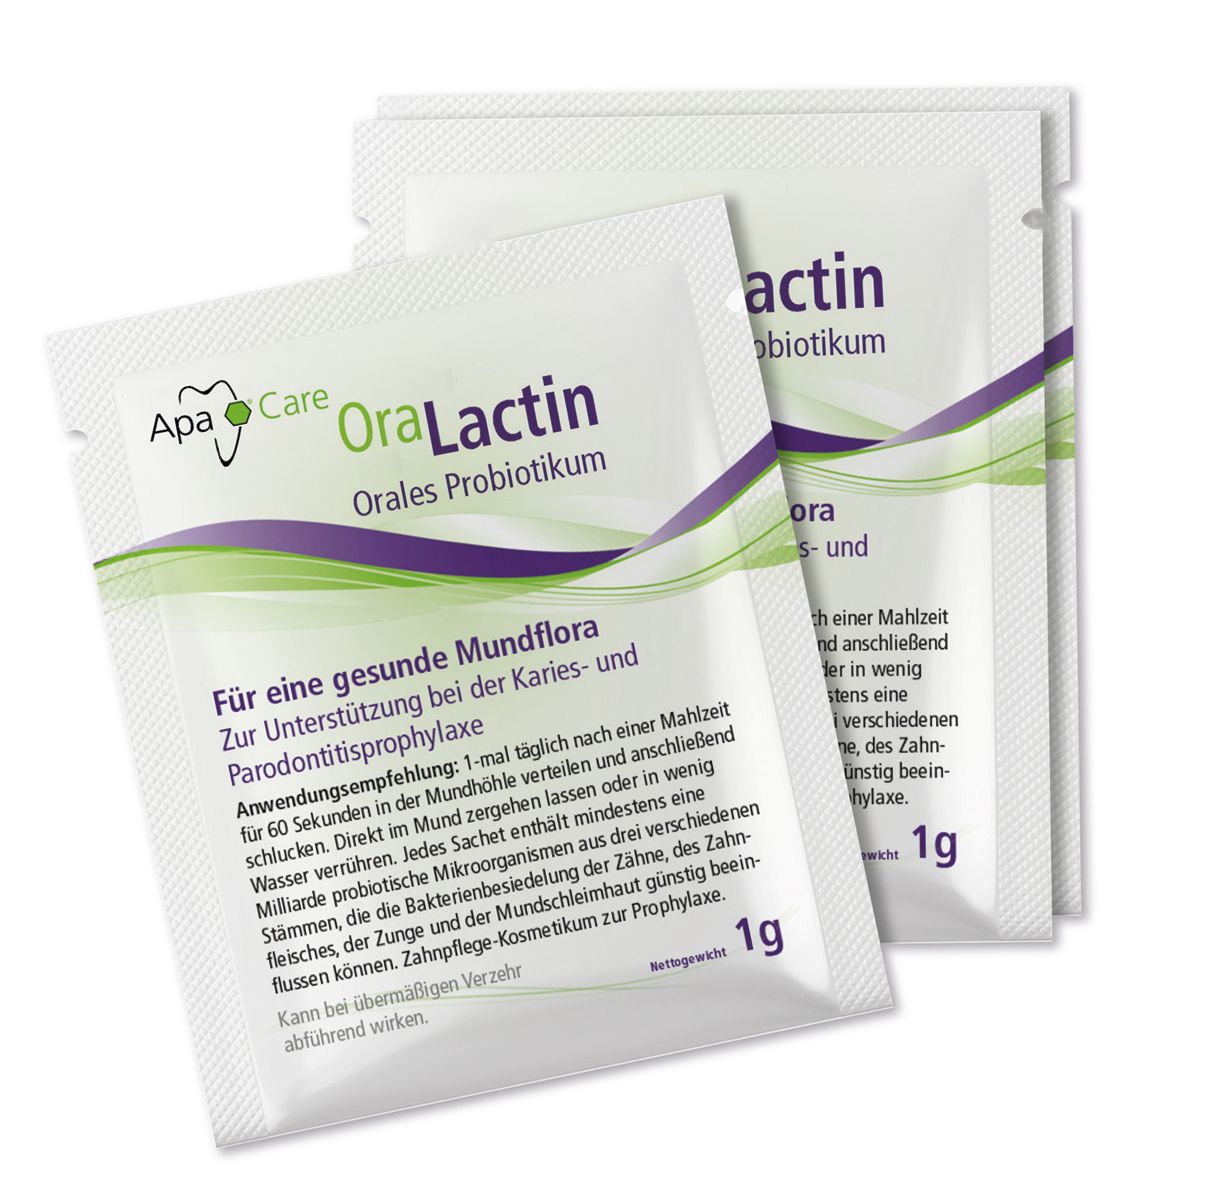 OraLactin – Orales Probiotikum (Sachets)